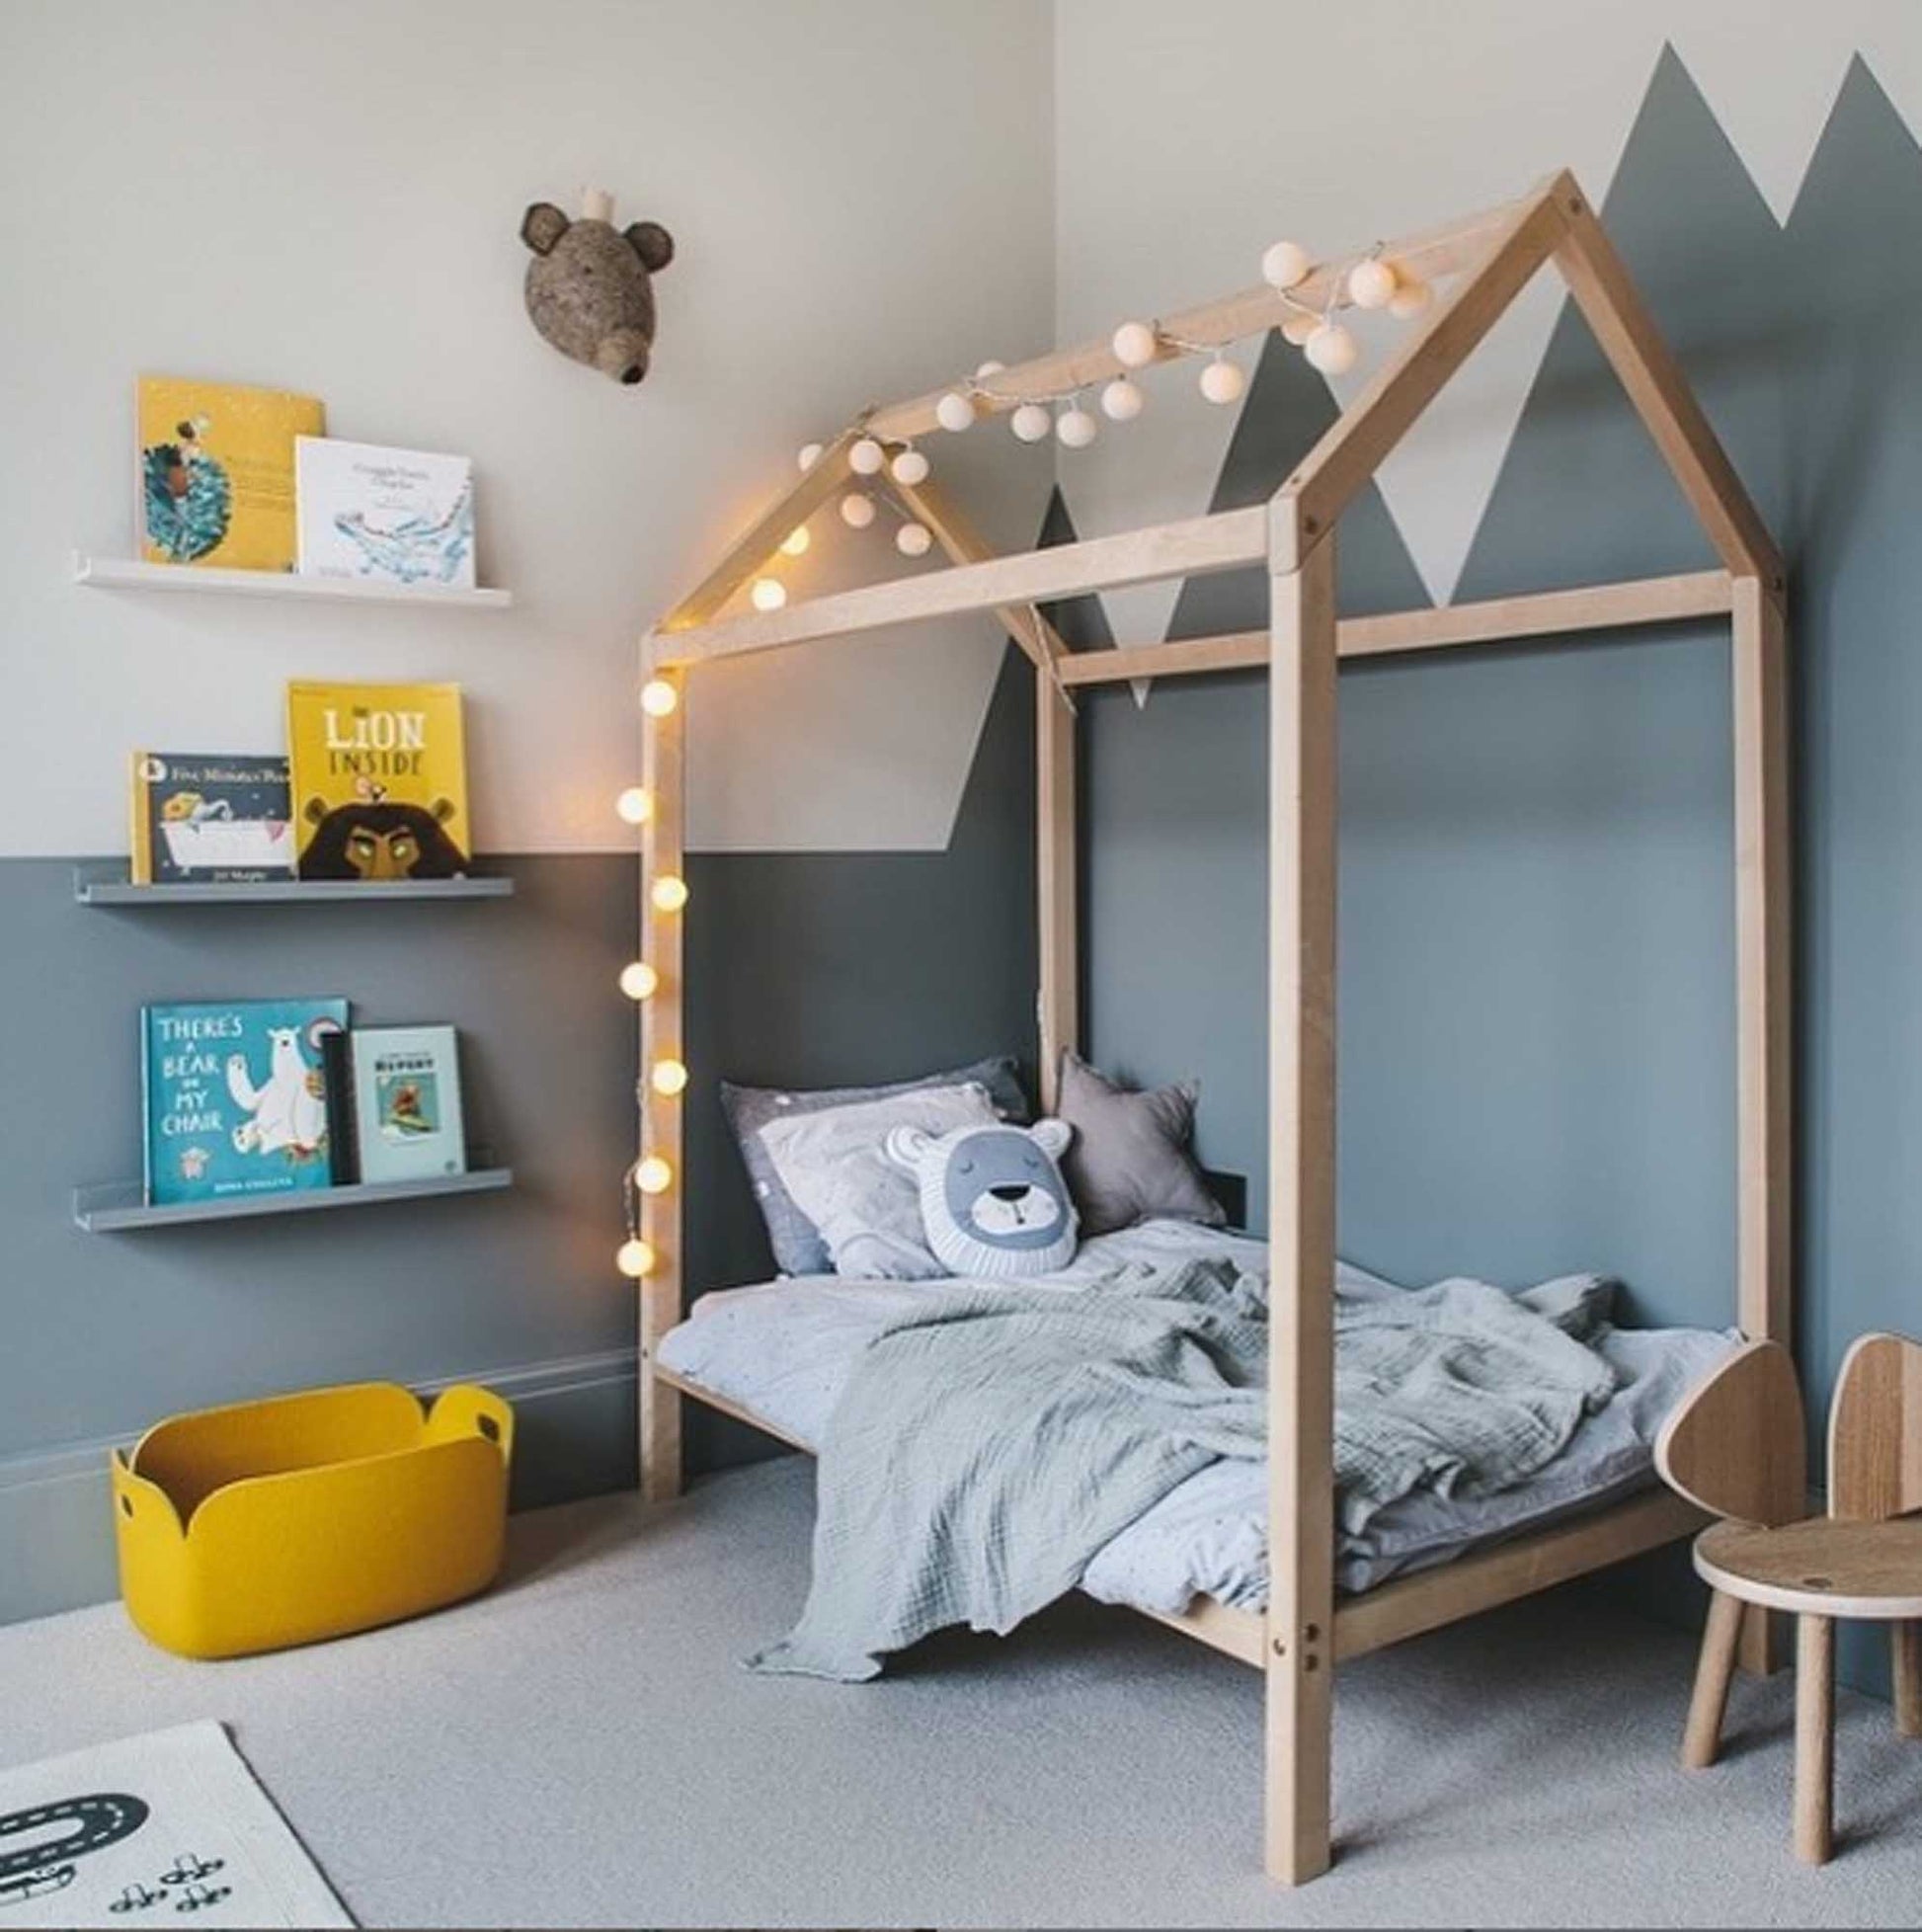 Estantería Montessori en forma de casa – Sweet HOME from wood